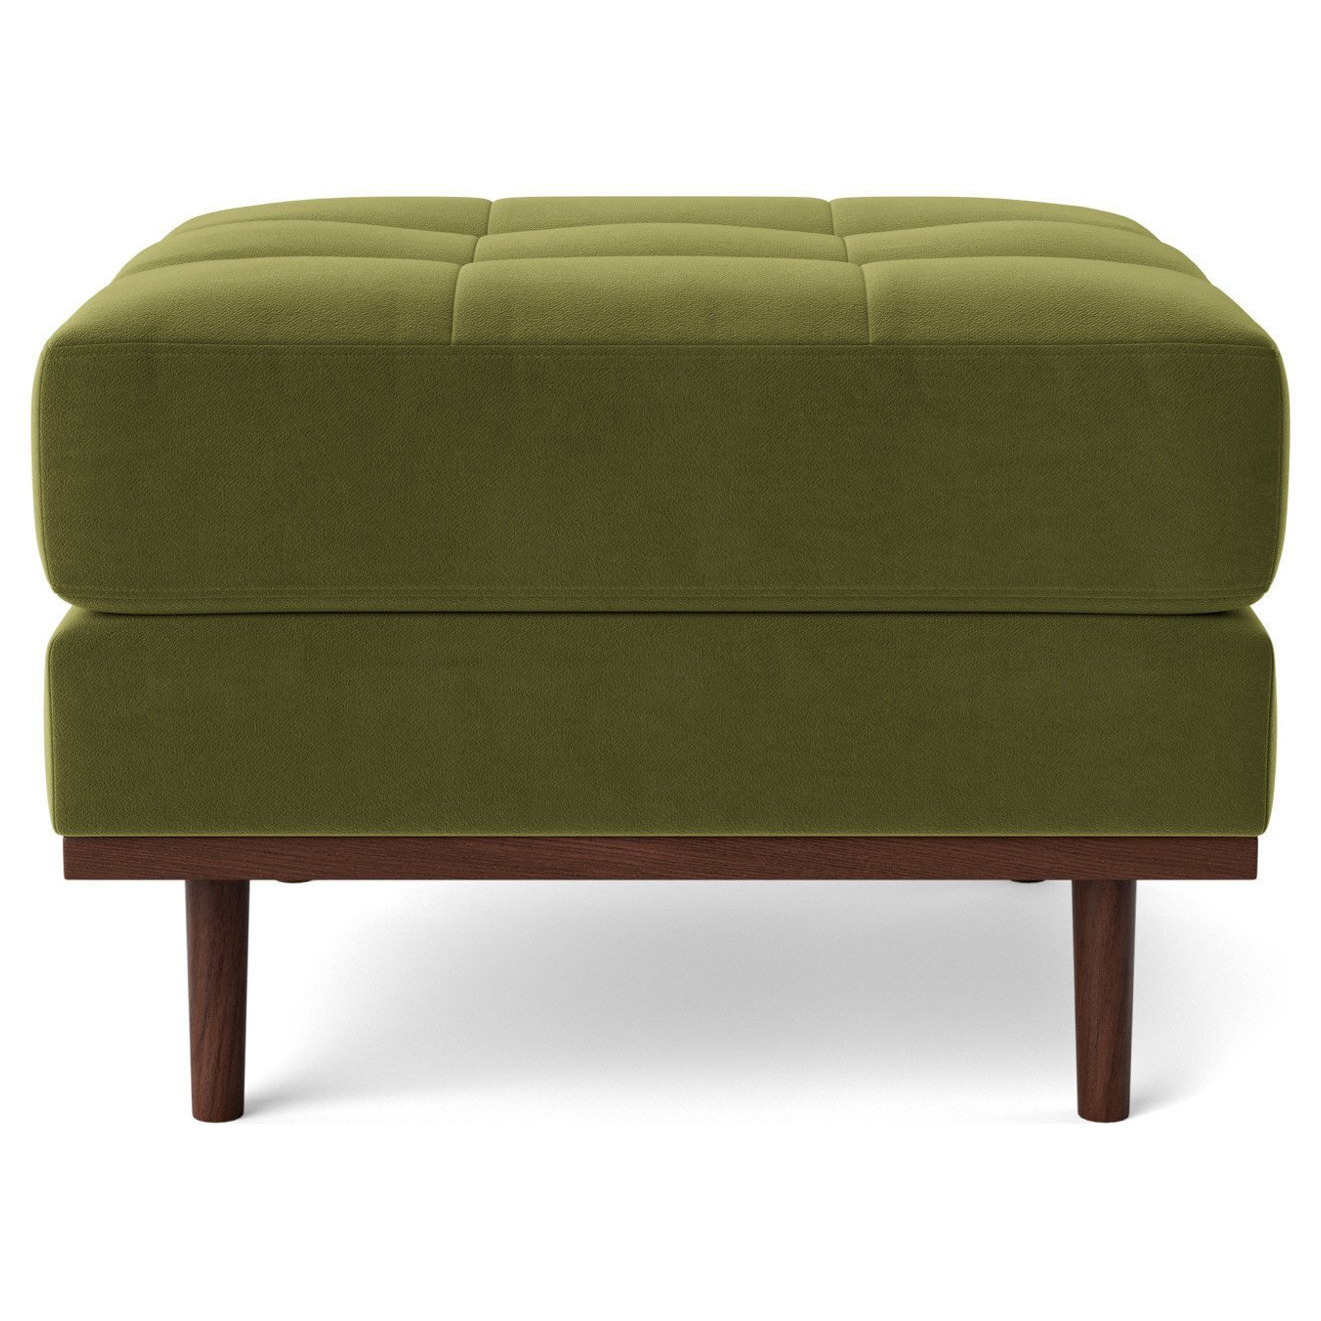 Swoon Berlin Velvet Ottoman Footstool - Fern Green - image 1